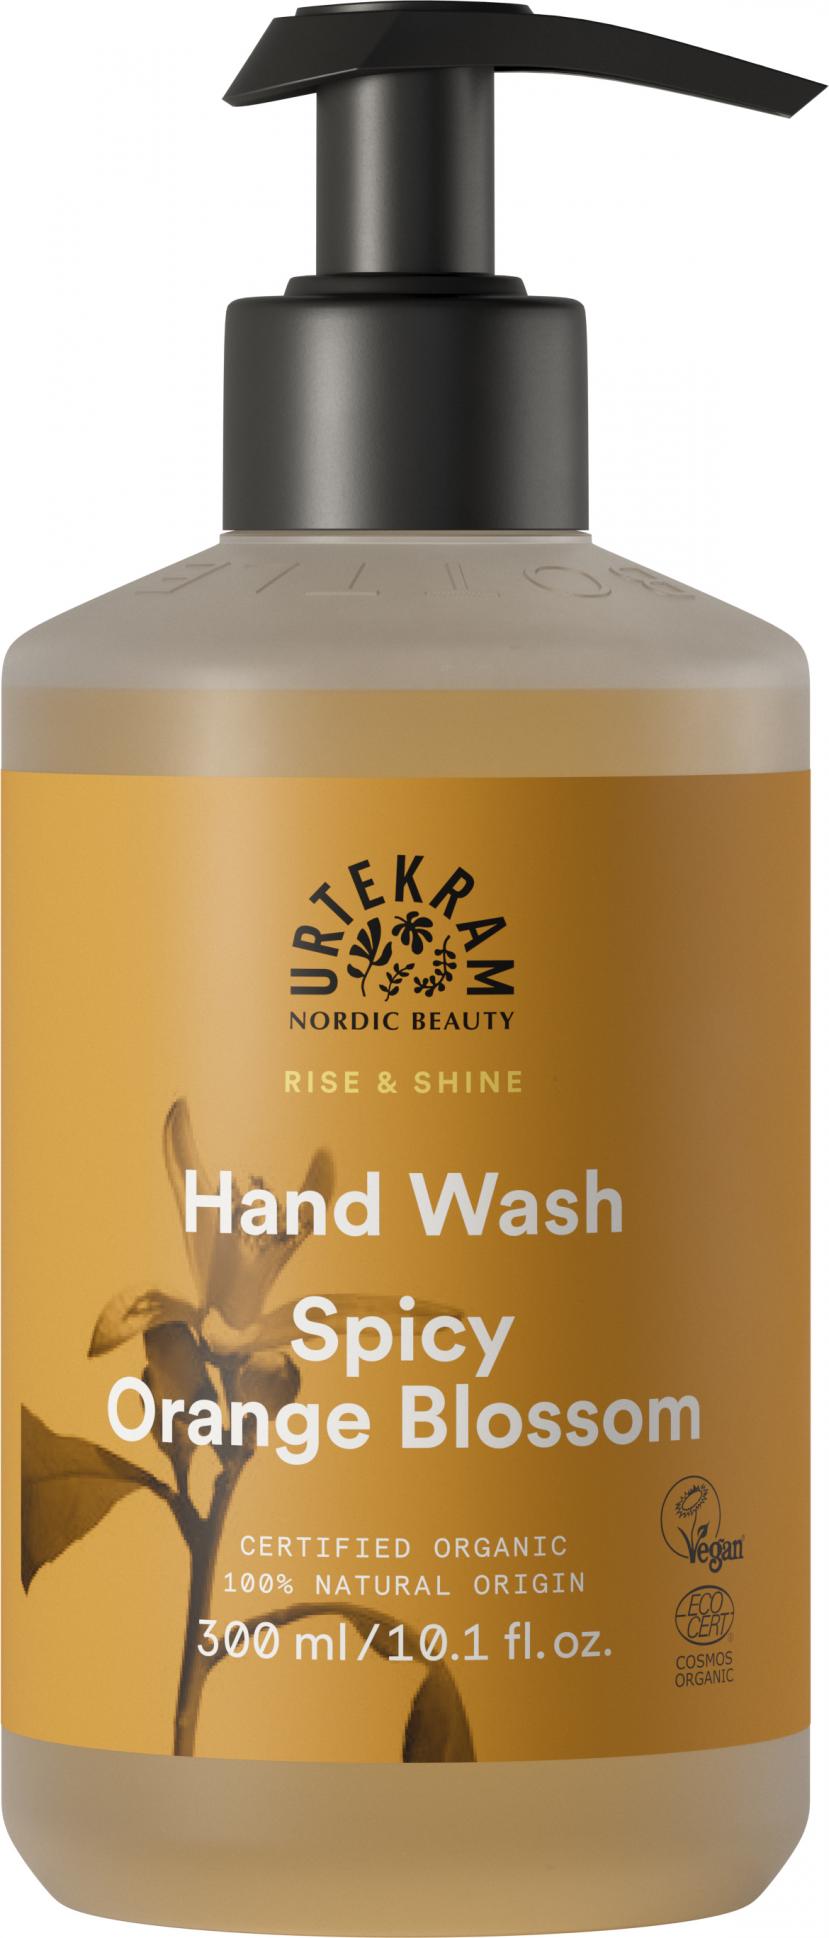 Hand Wash Spicy Orange Blossom 300ml